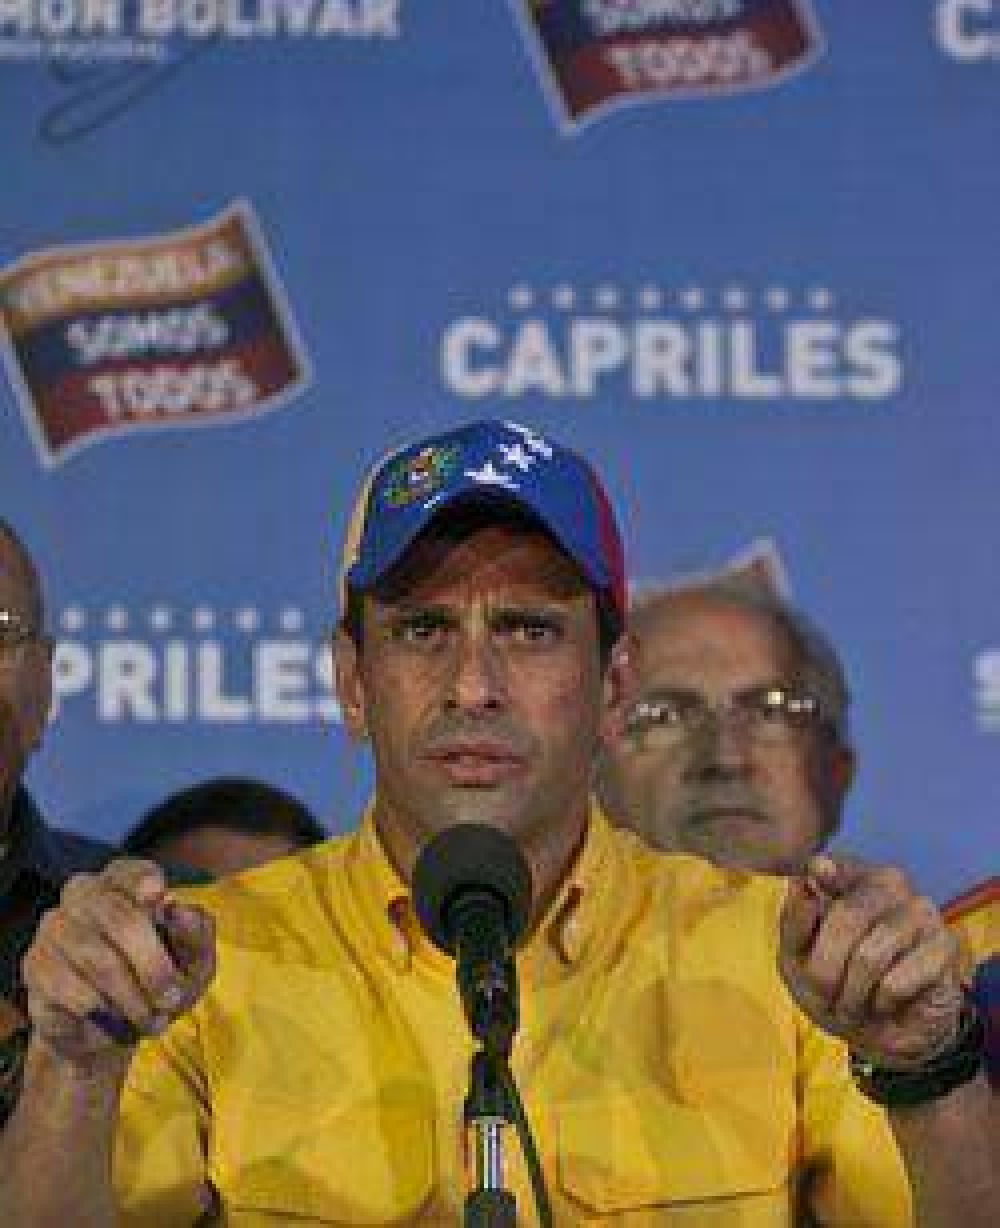 Capriles no admiti la derrota y pidi recontar sufragios "uno por uno"